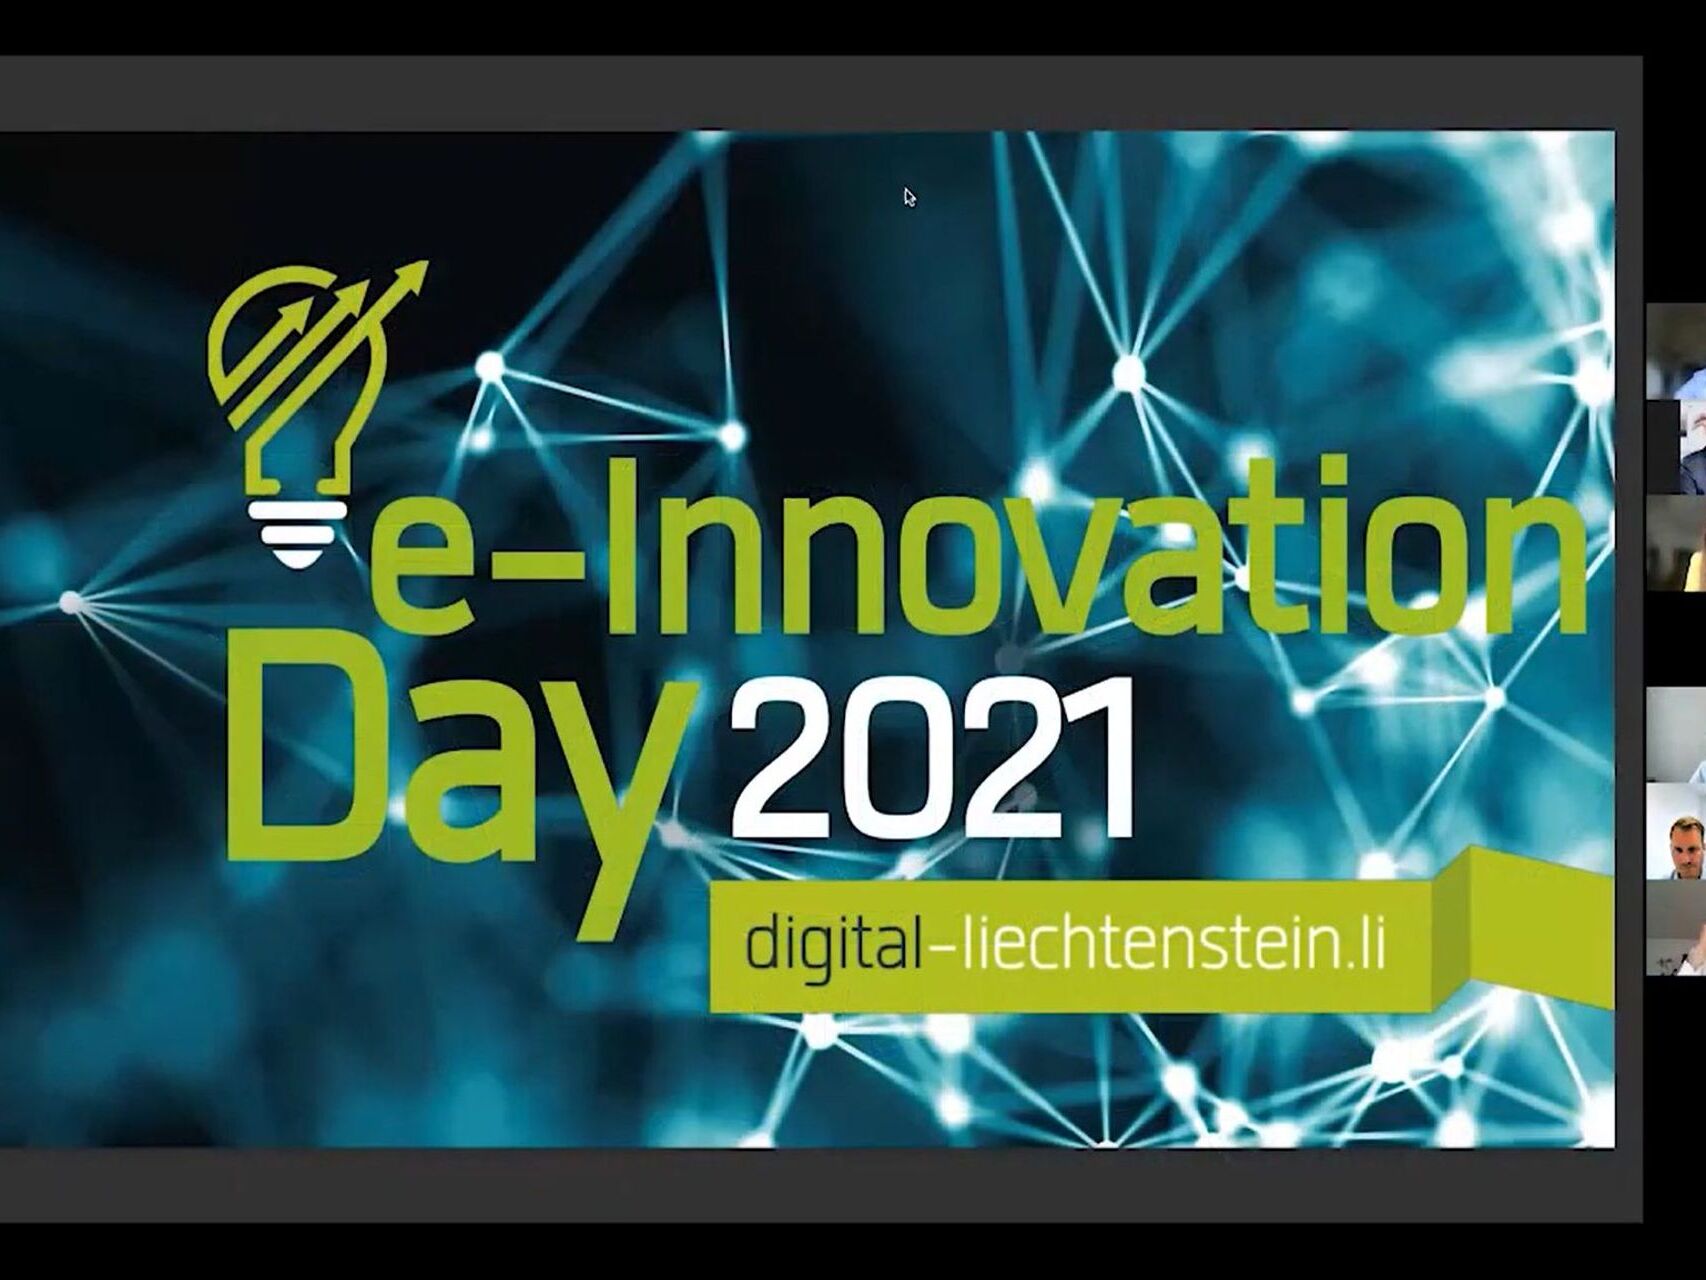 Deň elektronickej inovácie: úvodný rámec webinára „elektronická inovácia“ Lichtenštajnsko 2021